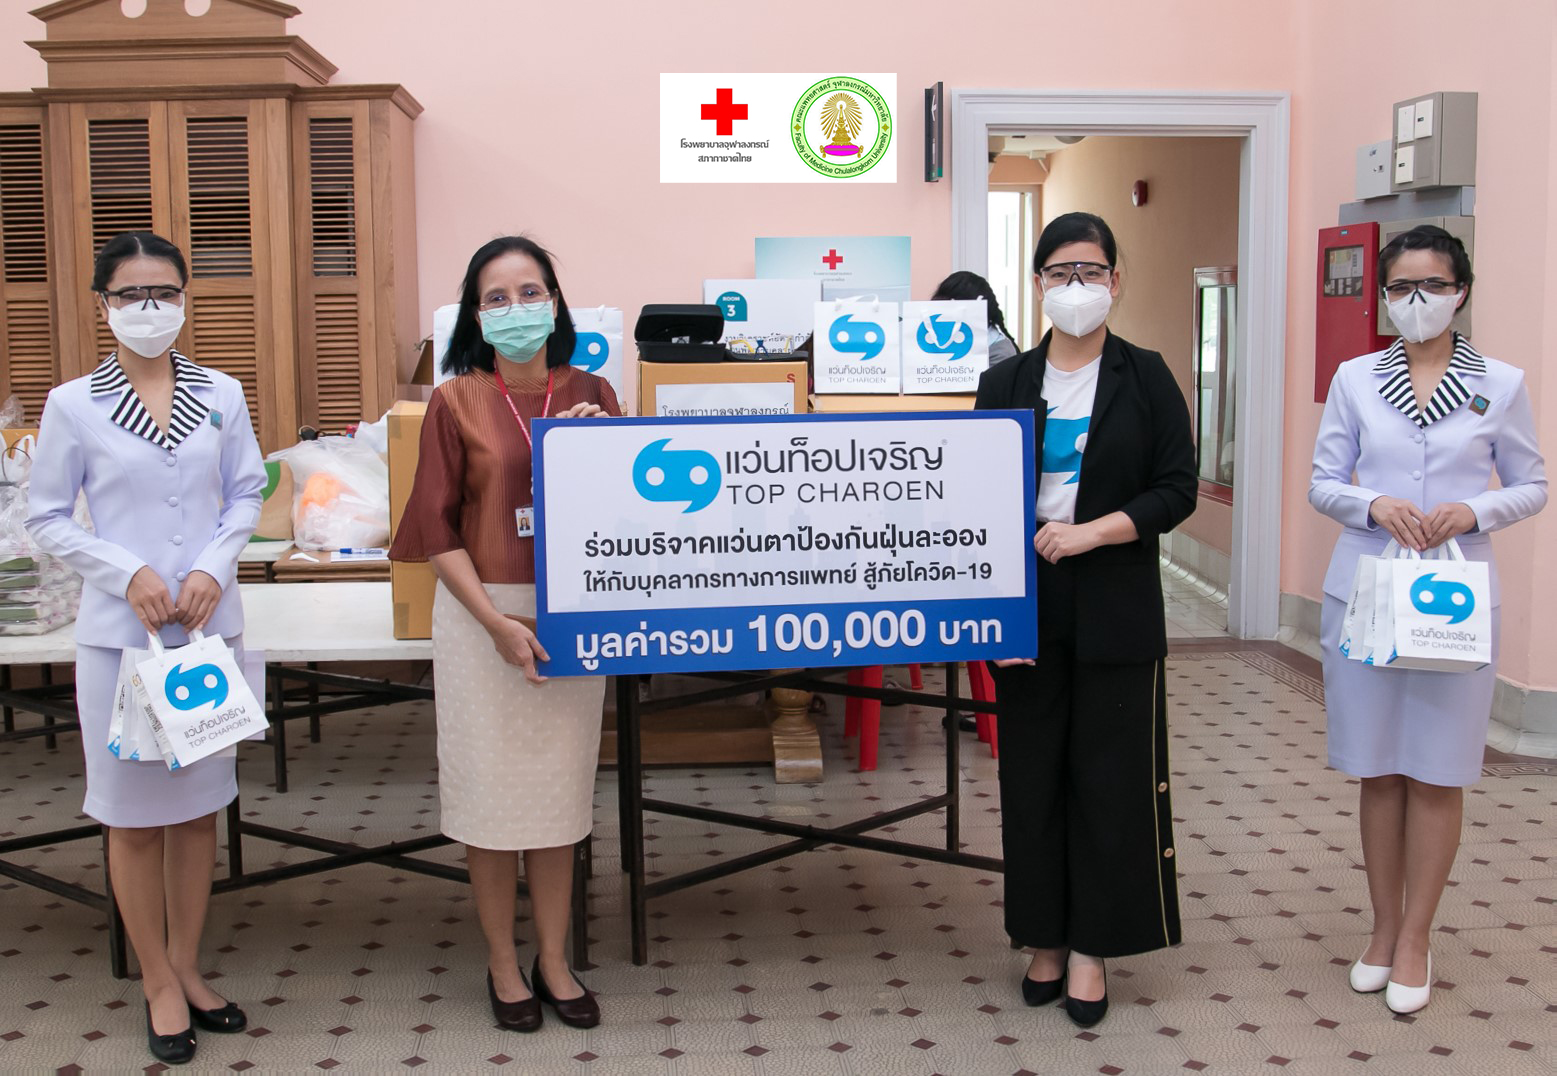 แว่นท็อปเจริญ มอบแว่นตาป้องกันฝุ่นละอองให้กับบุคลากรทางการแพทย์ ณ โรงพยาบาลจุฬาลงกรณ์ สภากาชาดไทย เพื่อต่อสู้ในช่วงภาวะวิกฤต